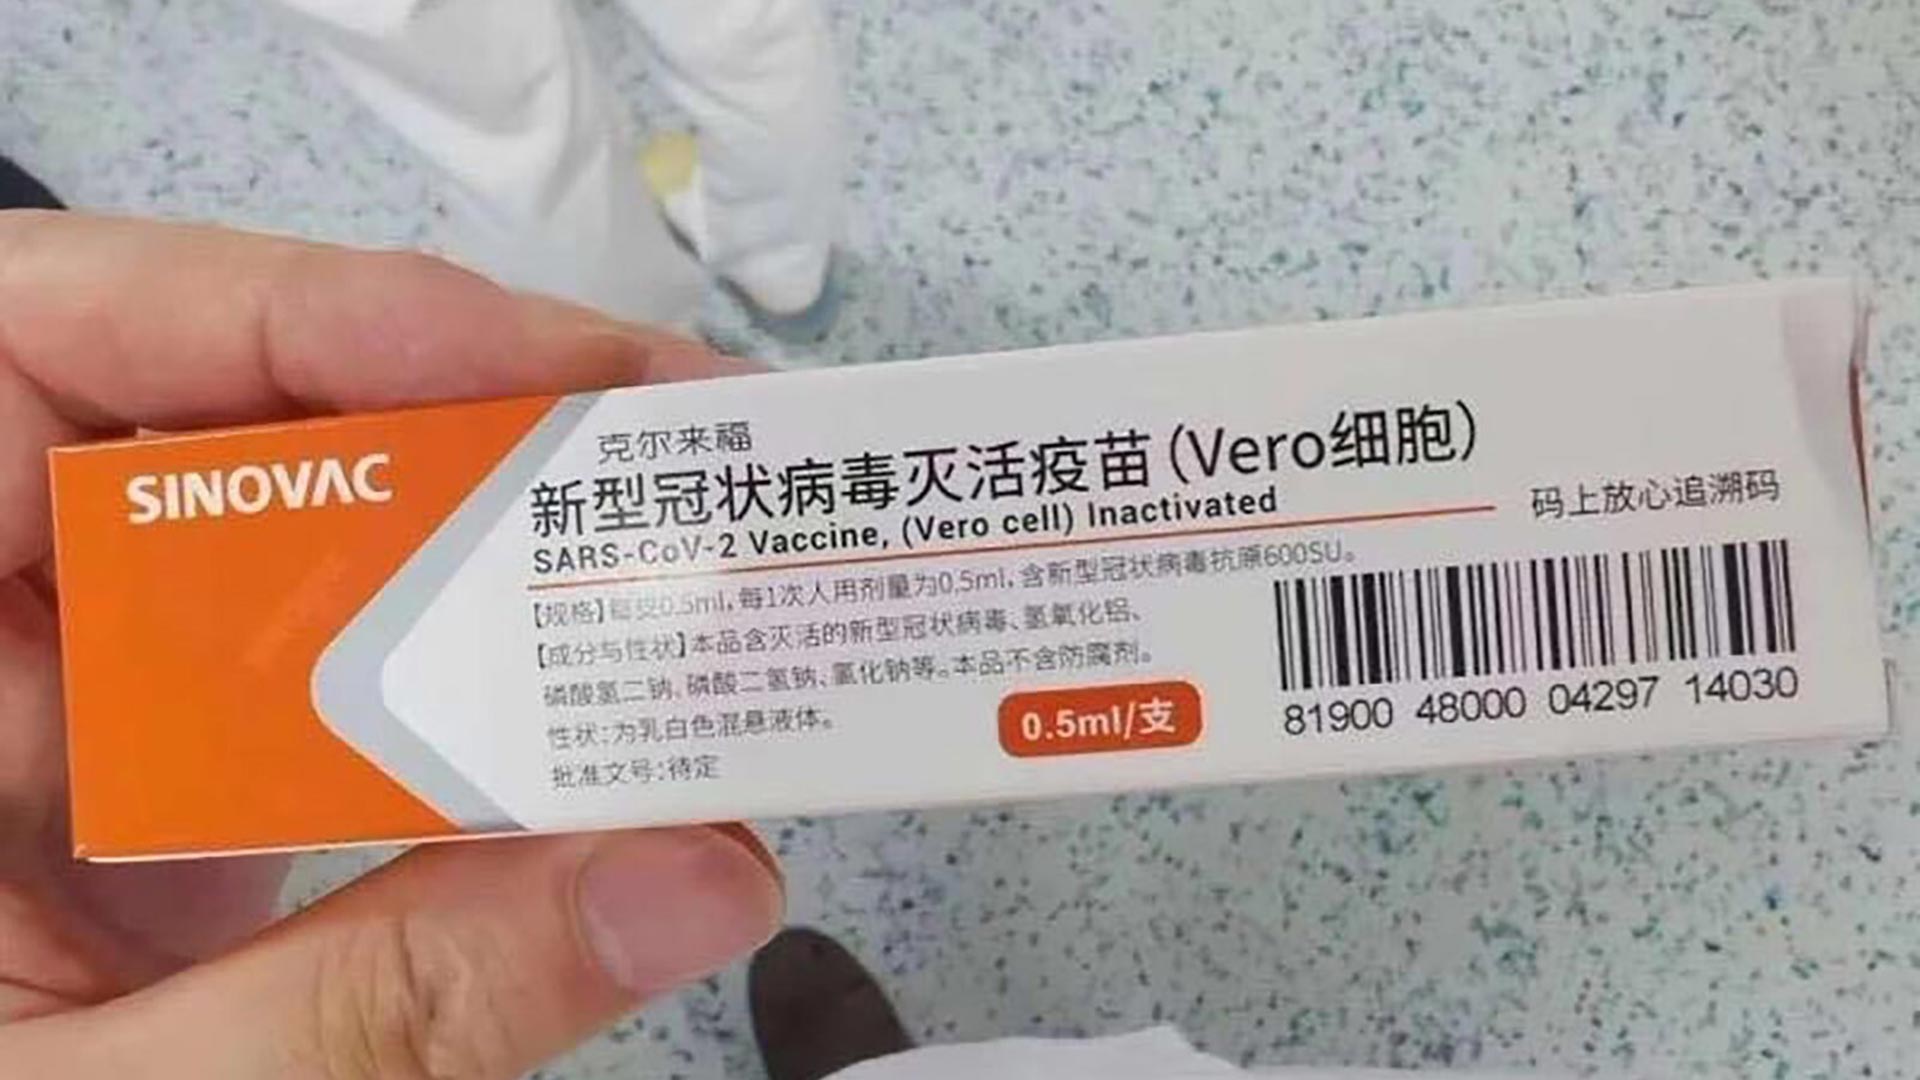 Una fotografía que circula por Weibo y muestra una caja de Sinovac, el laboratorio chino que está en carrera para producir una de las vacunas contra el COVID-19 (Weibo)